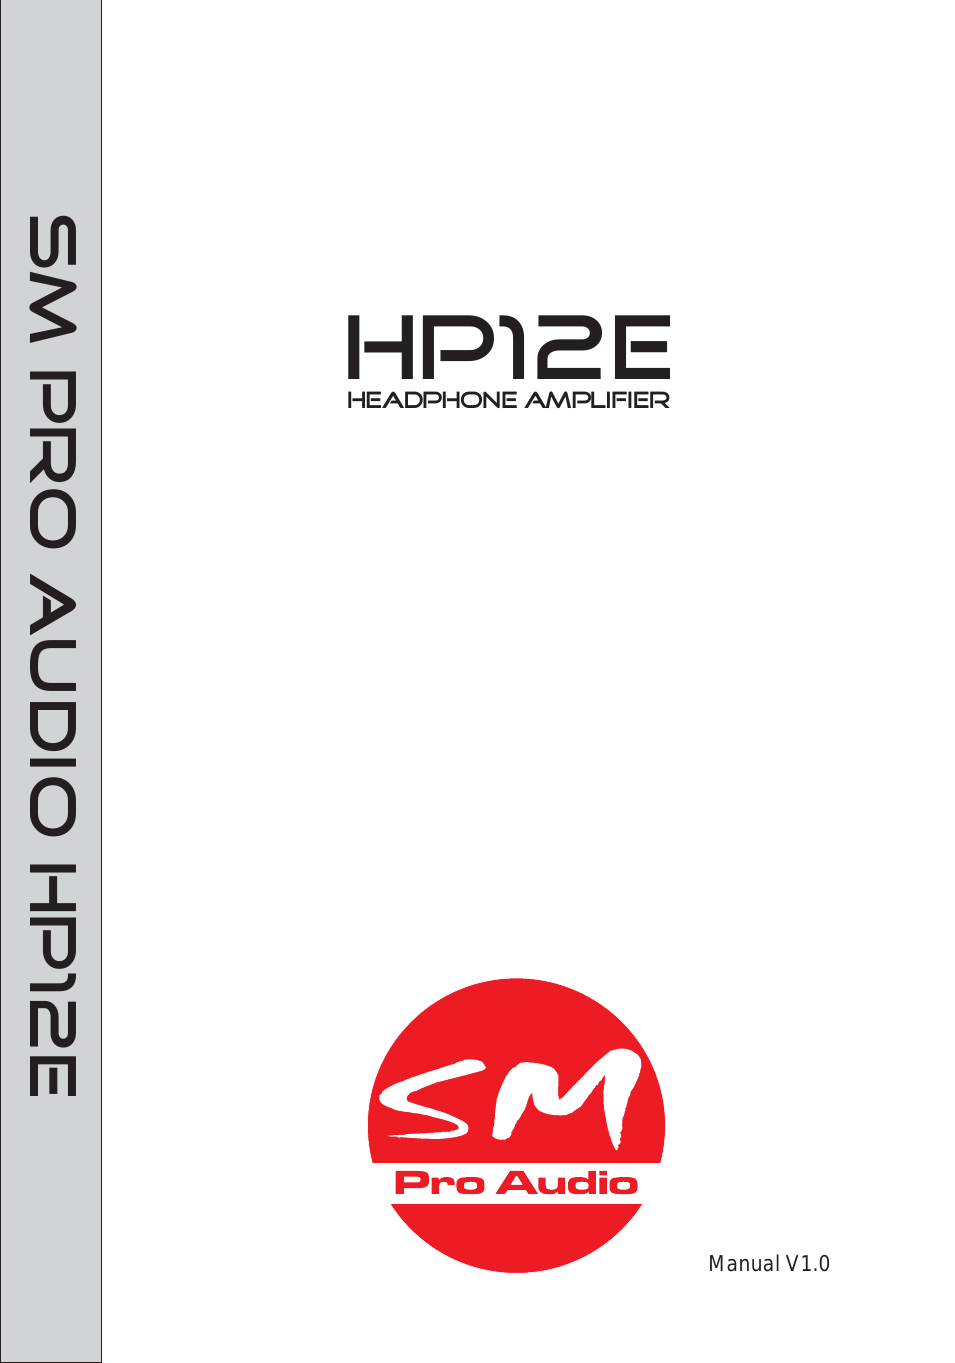 HP12E: 12 channel headphone amplifier